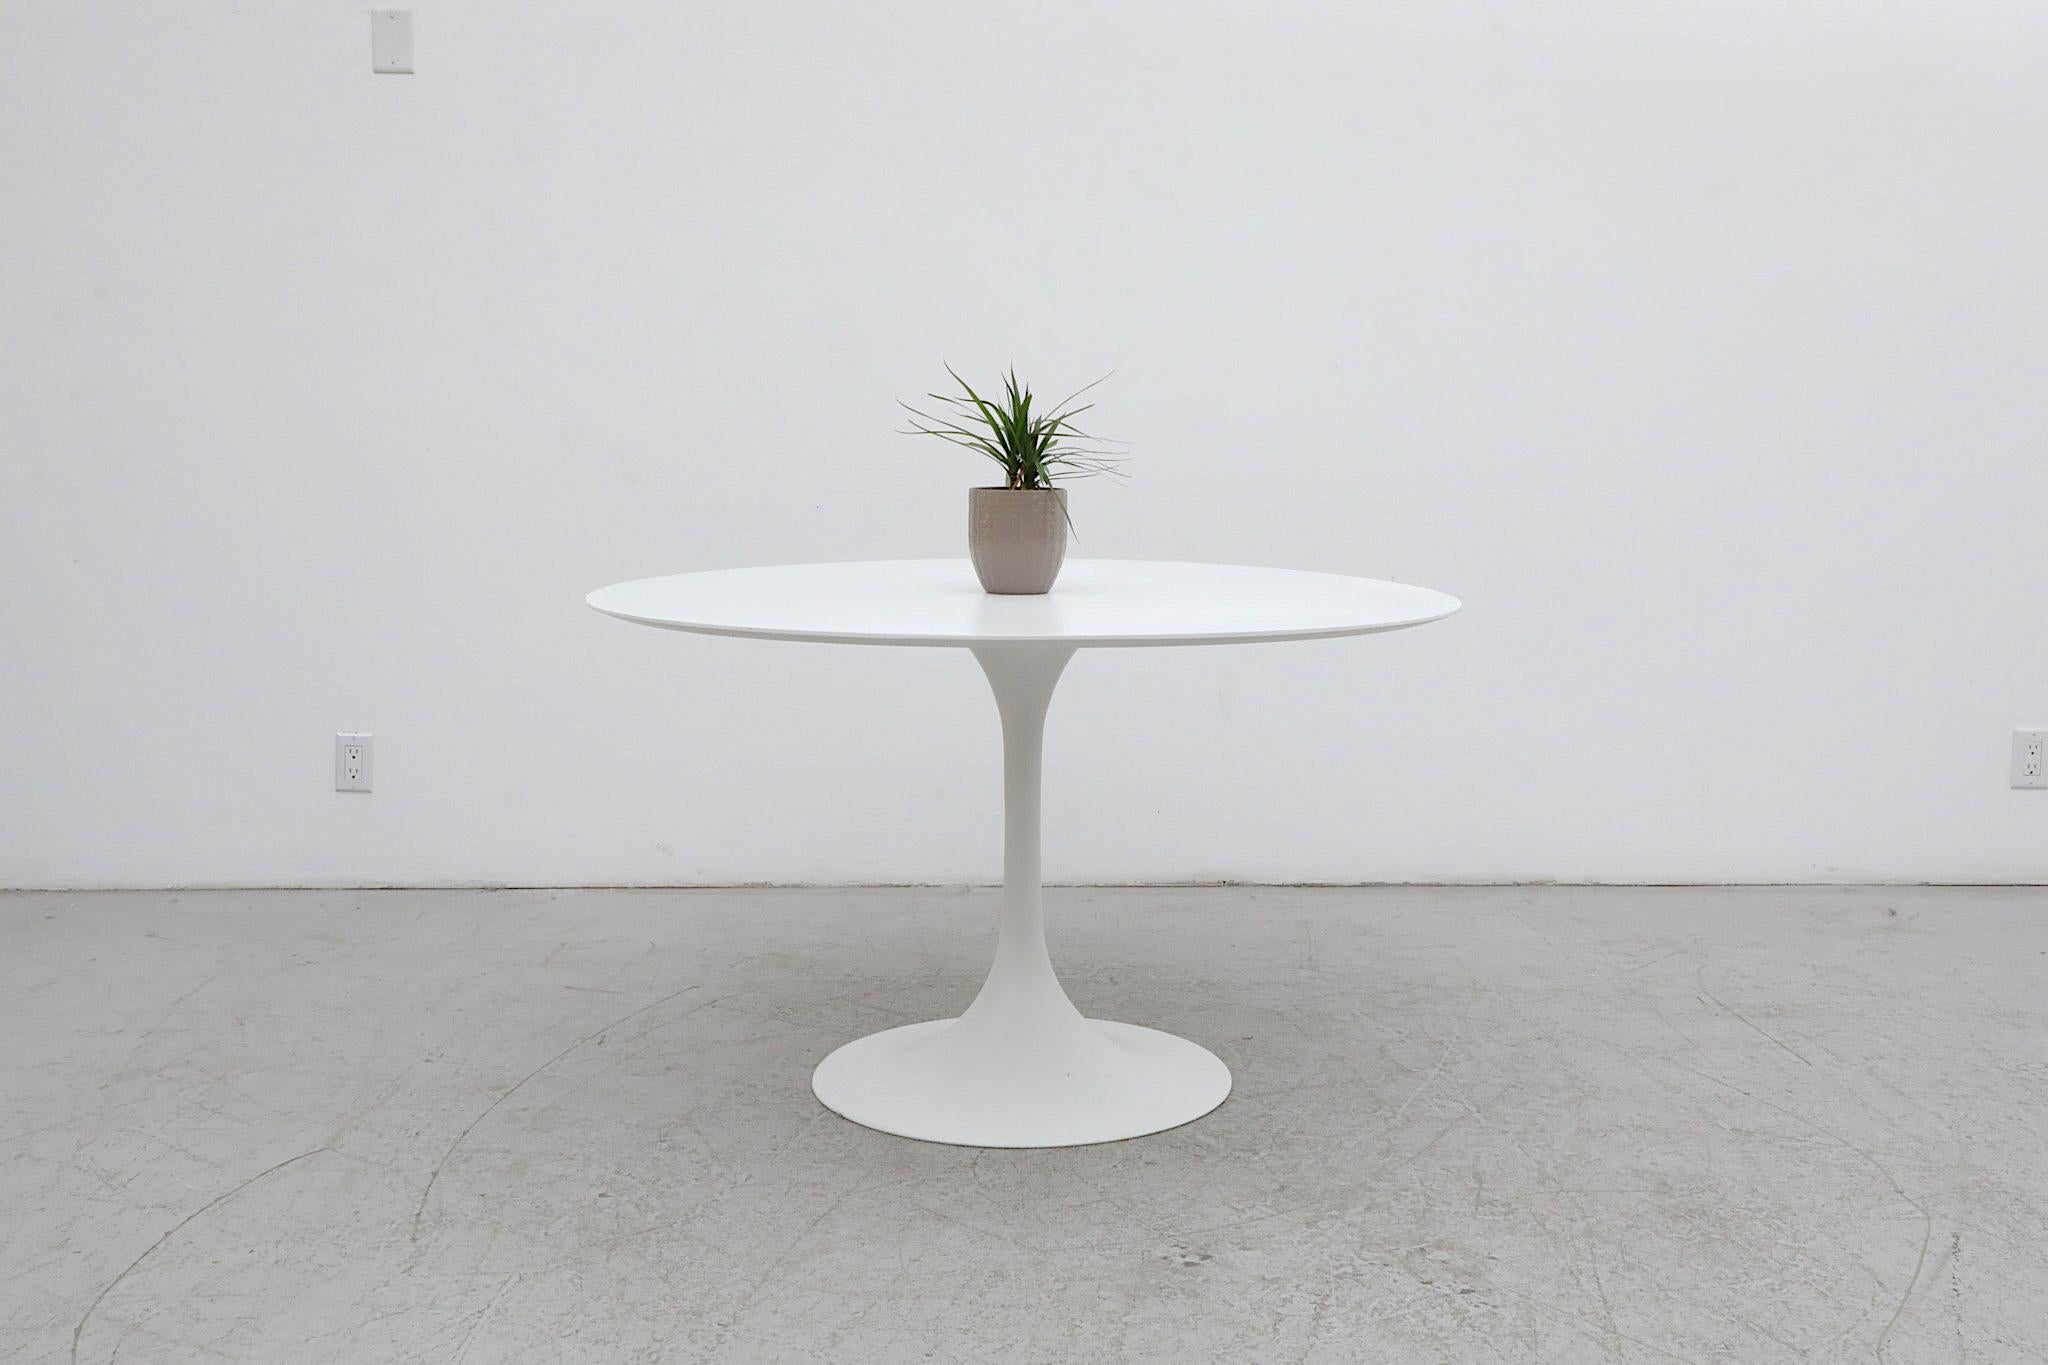 Table de salle à manger blanche à base de tulipe, élégante et raffinée, conçue par Cees Braakman dans le style d'Eero Saarinen pour Pastoe. Les Pays-Bas. On peut dire que Braakman est presque littéralement né pour dessiner pour l'entreprise,